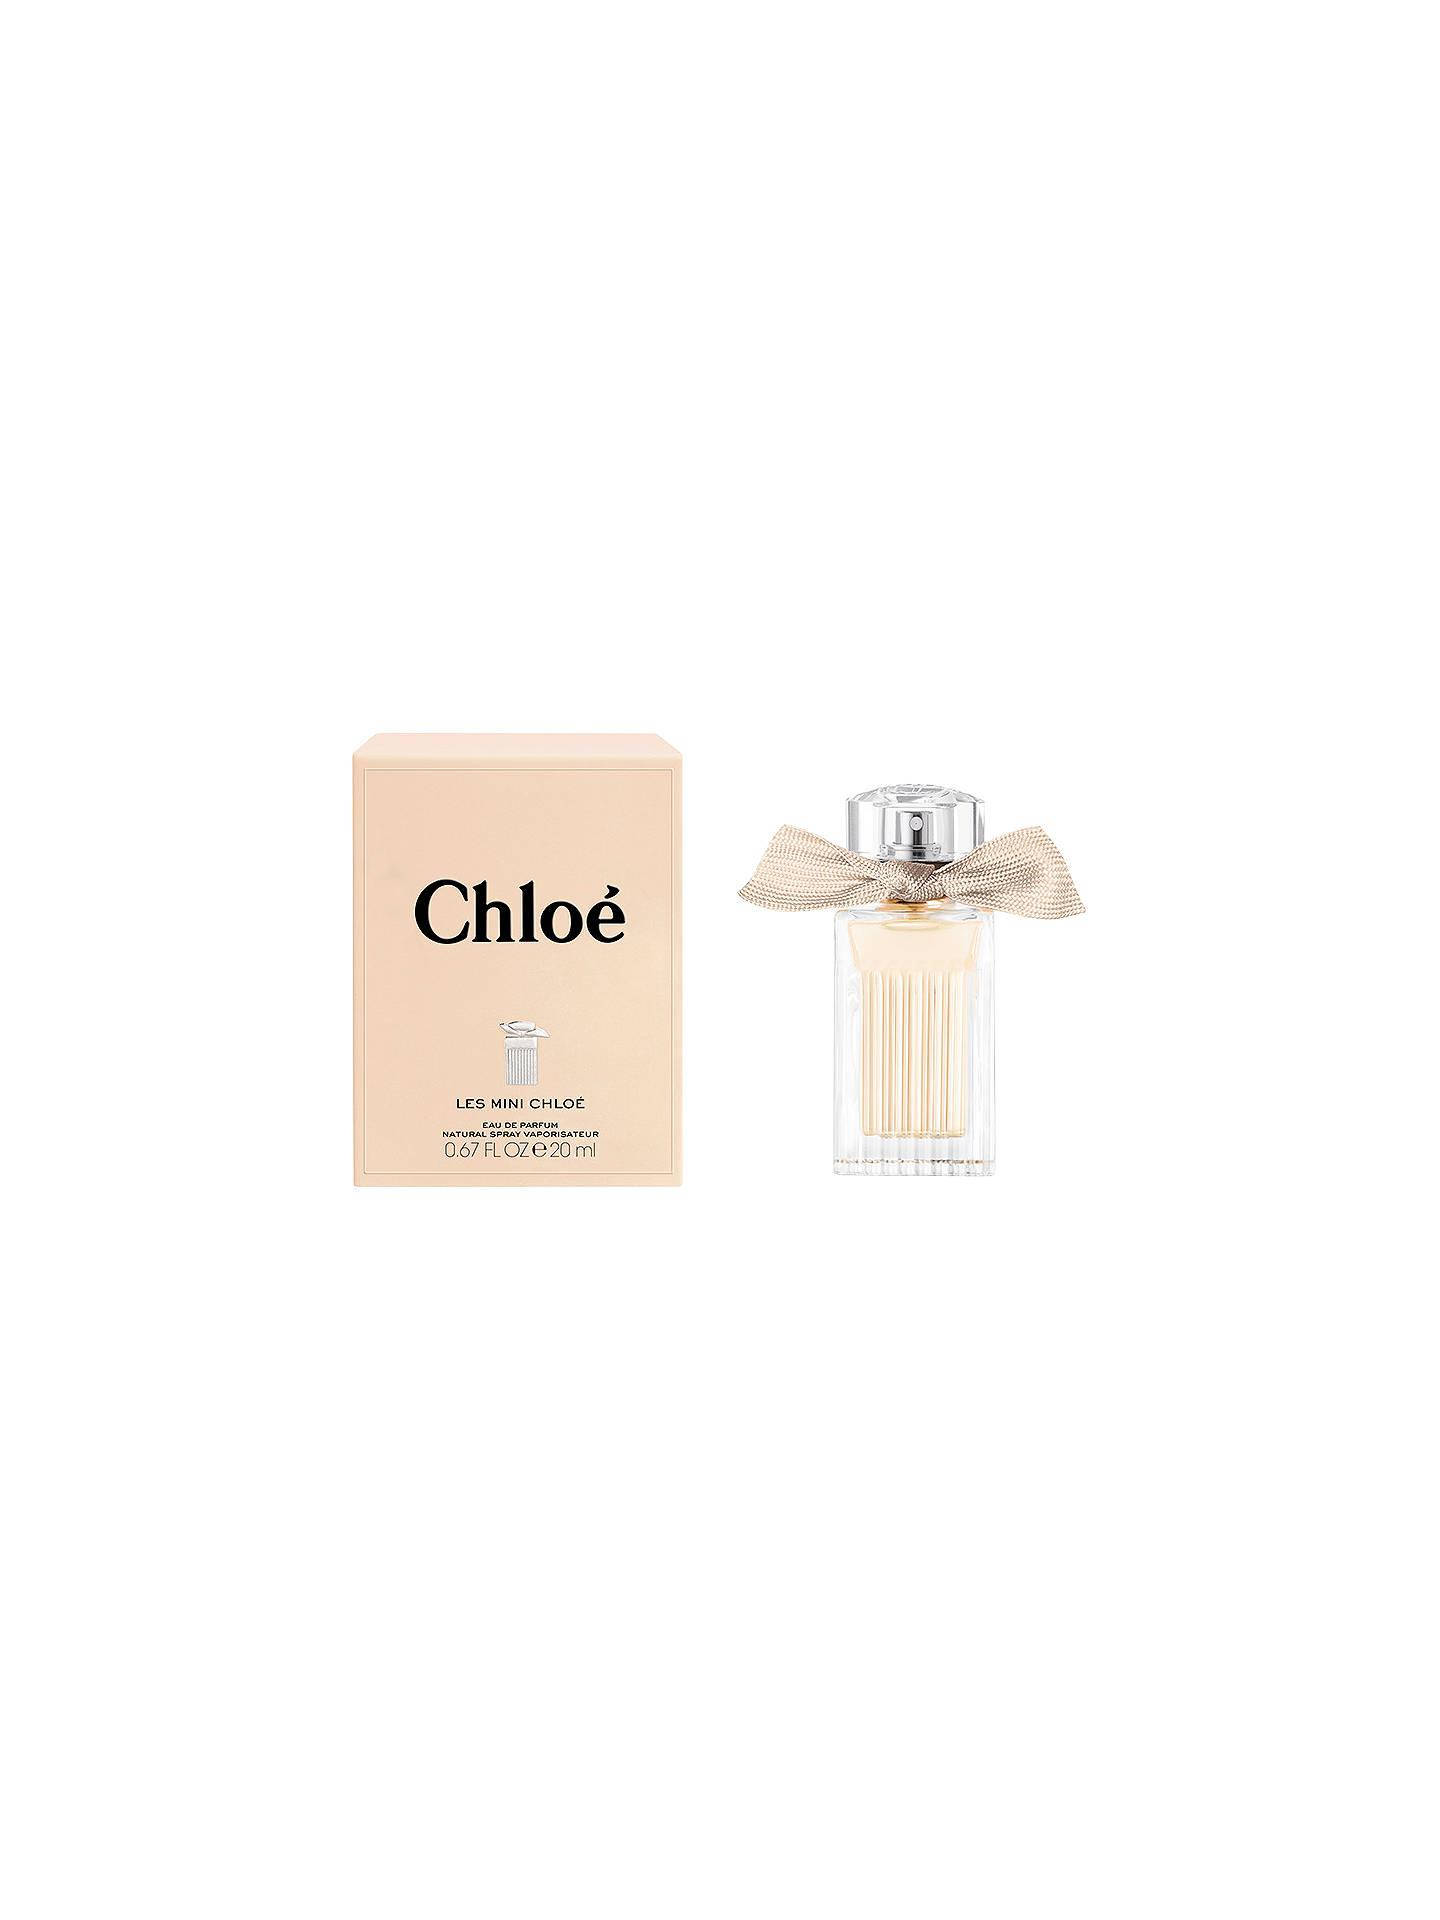 Chloé Eau De Parfum Bottle Wallpaper